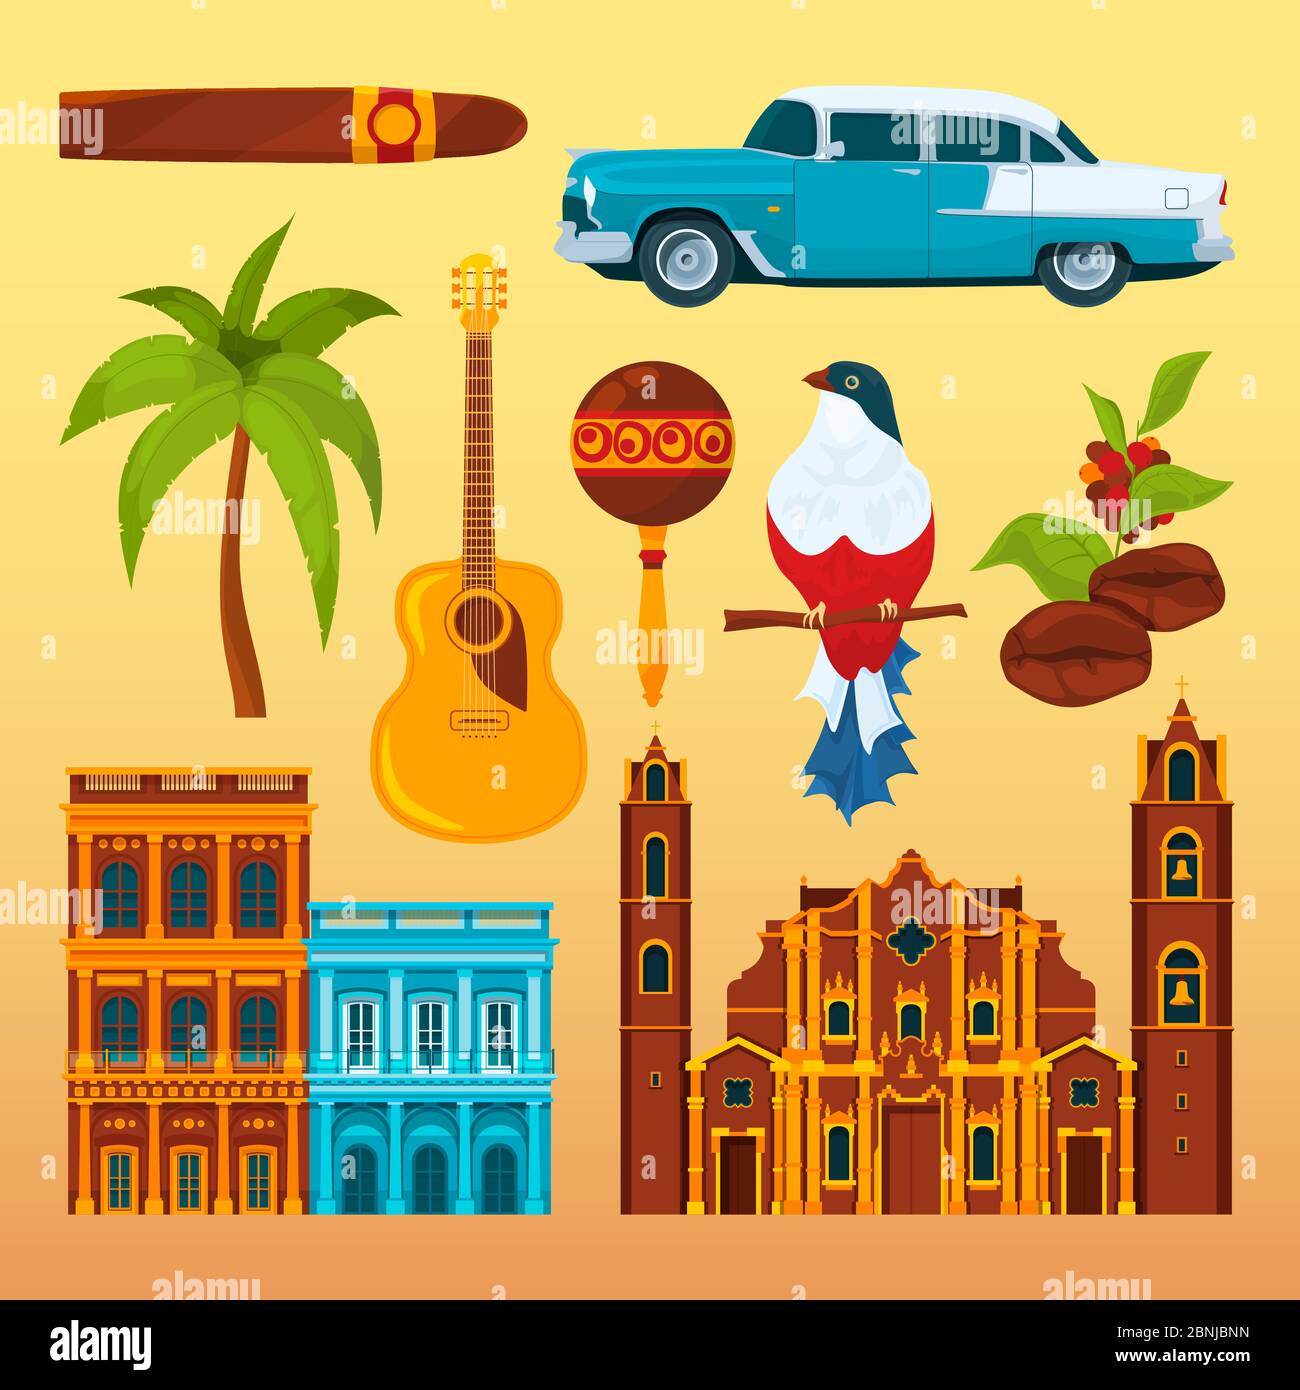 El cigarro de la Habana y otros objetos culturales y símbolos de Cuba Ilustración del Vector